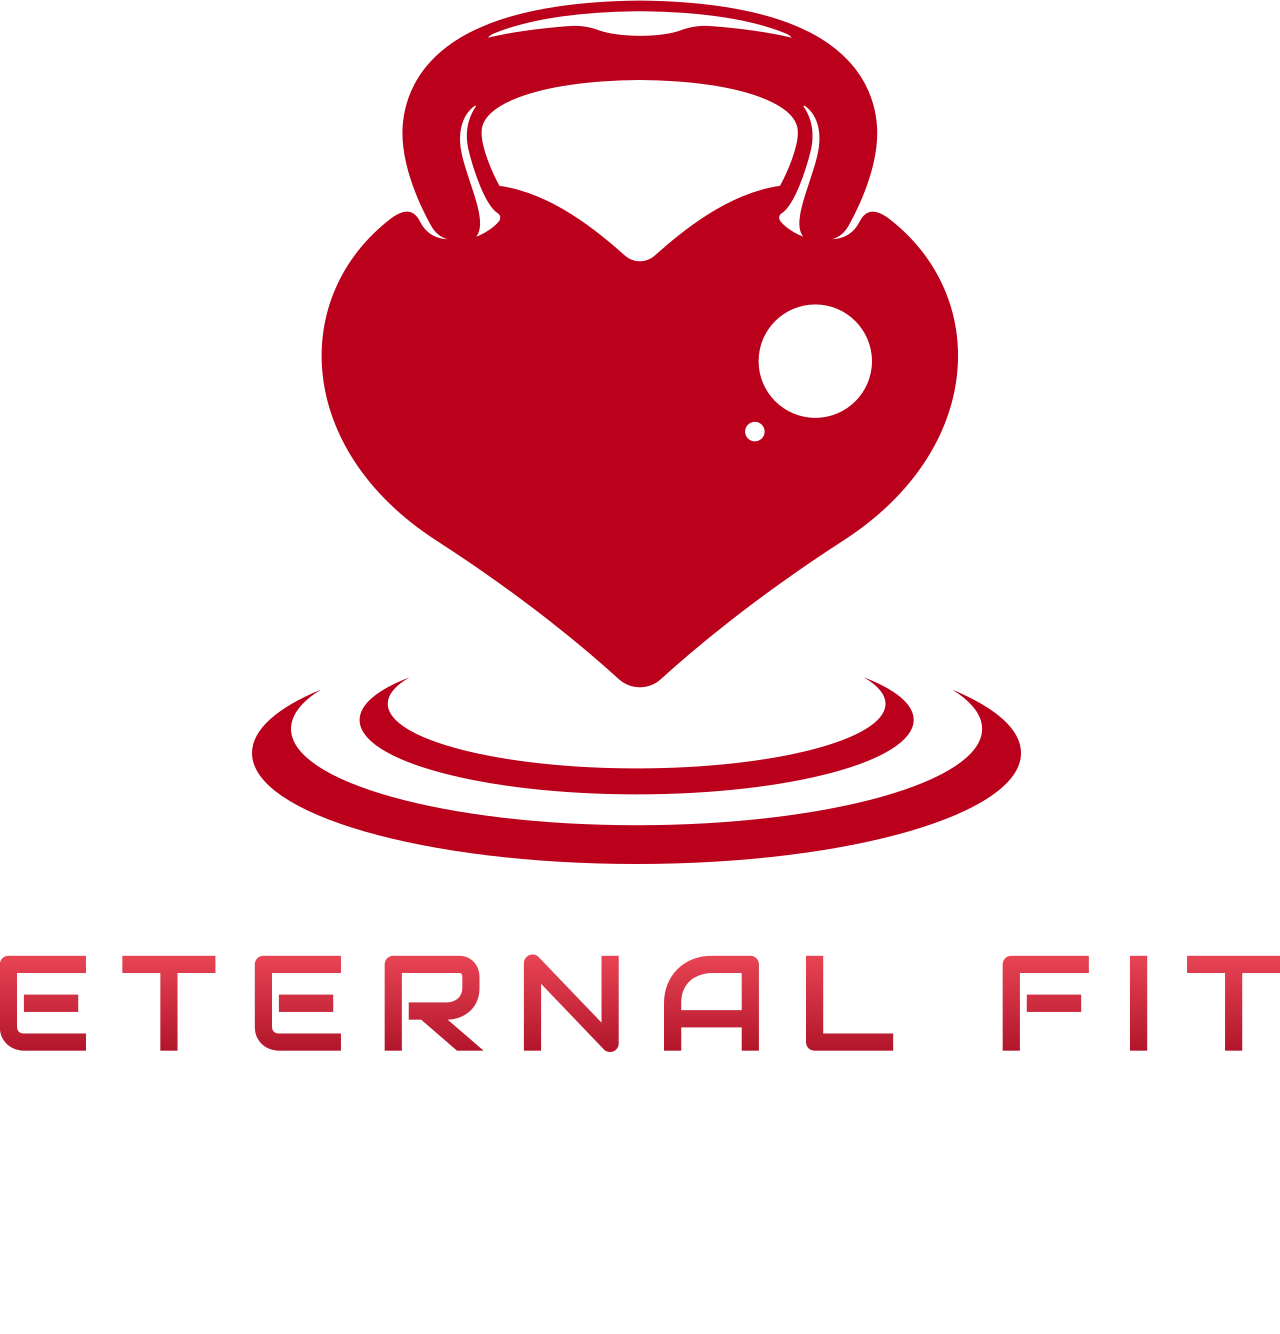 ETERNAL FIT's logo